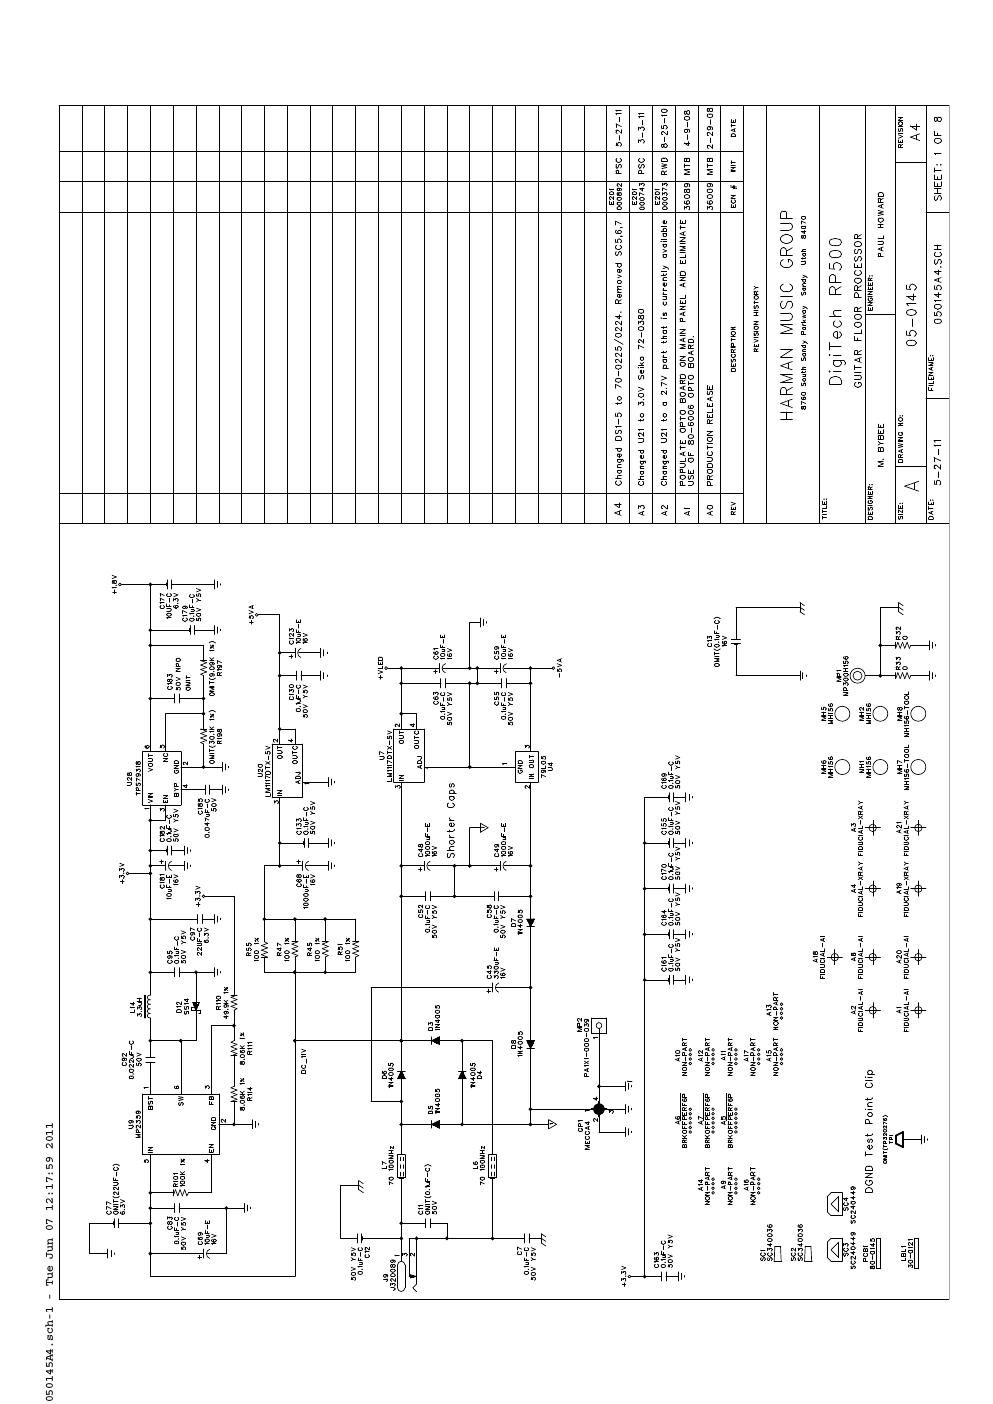 digitech rp 500 power supply schematic